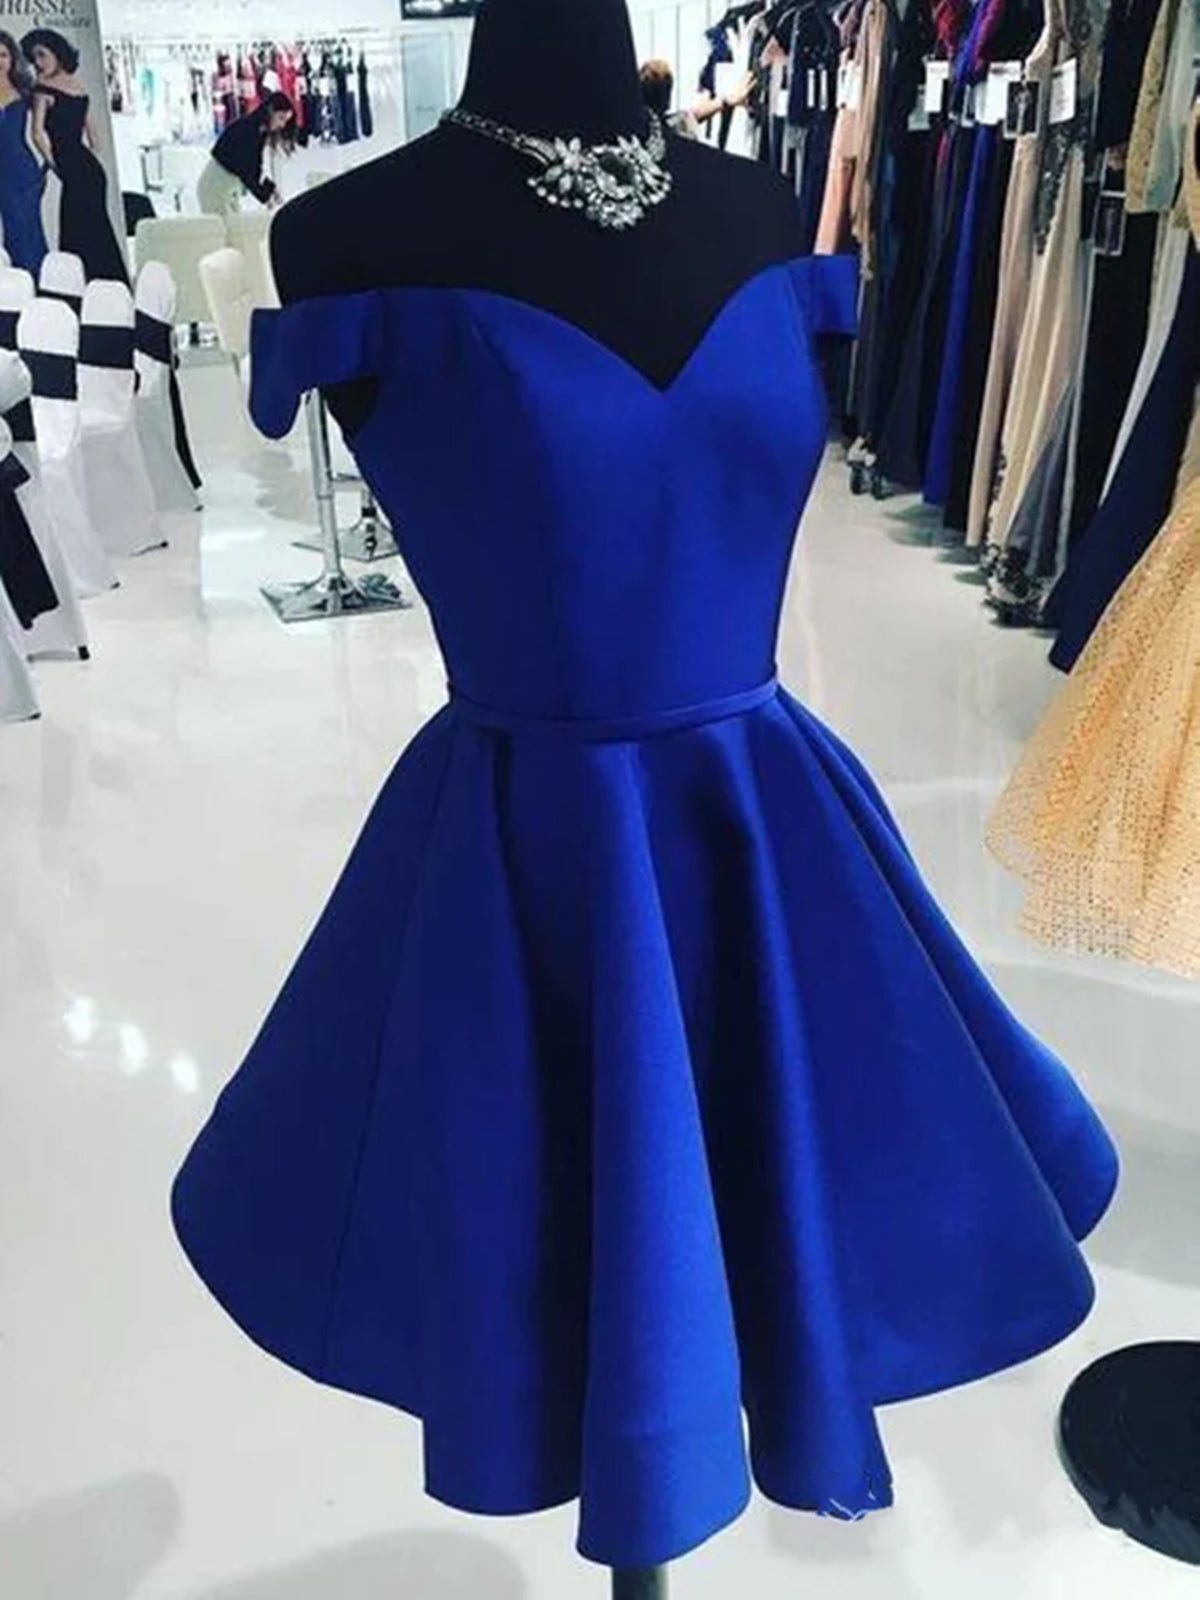 Party Dress Ideas, Off the Shoulder Short Blue Prom Dresses, Off Shoulder Short Blue Formal Homecoming Dresses